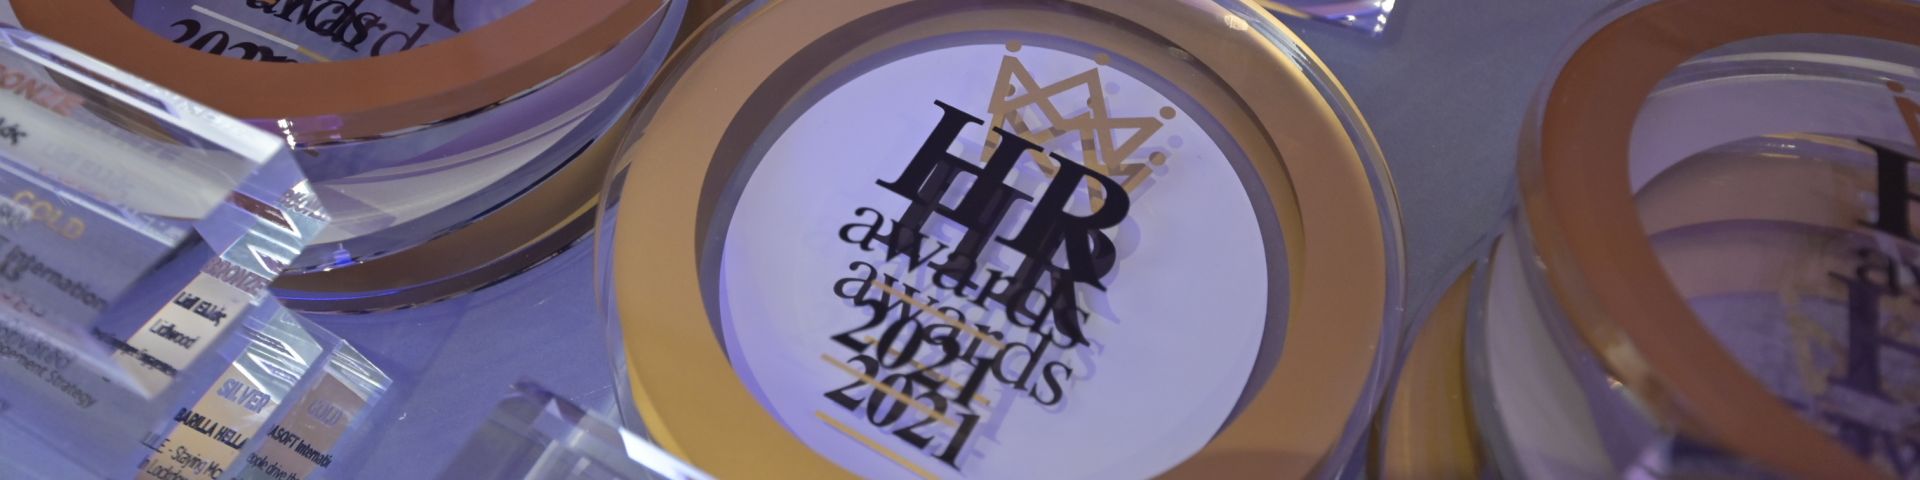 Φωτογραφία του βραβείου HR Awards 2021